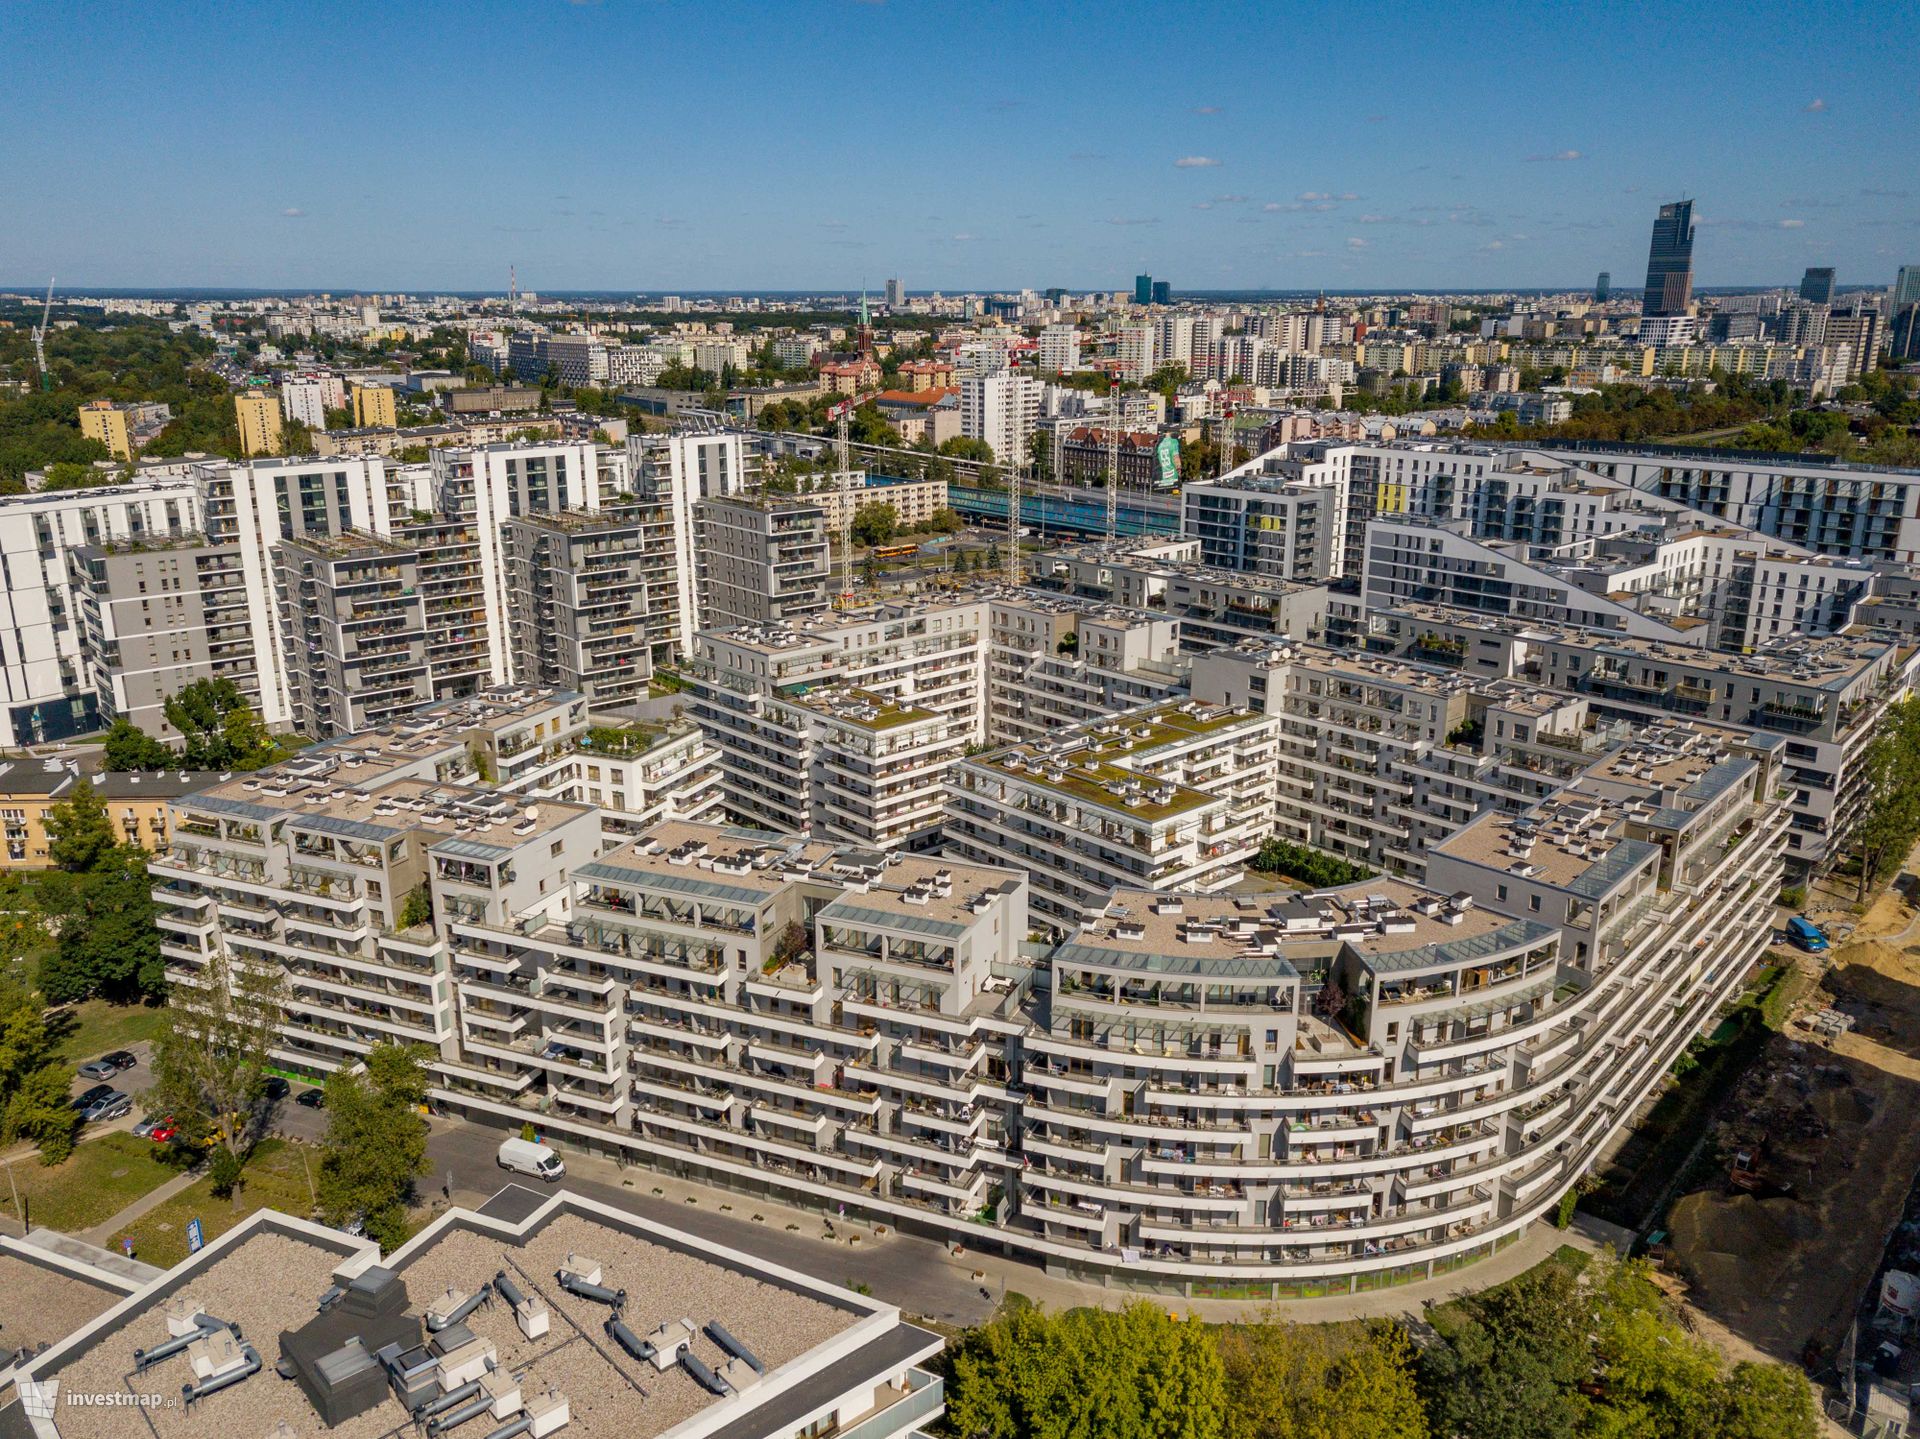 Optymizm na rynku mieszkaniowym w Polsce – 8,4 tys. mieszkań sprzedanych w ostatnim kwartale 2022 roku